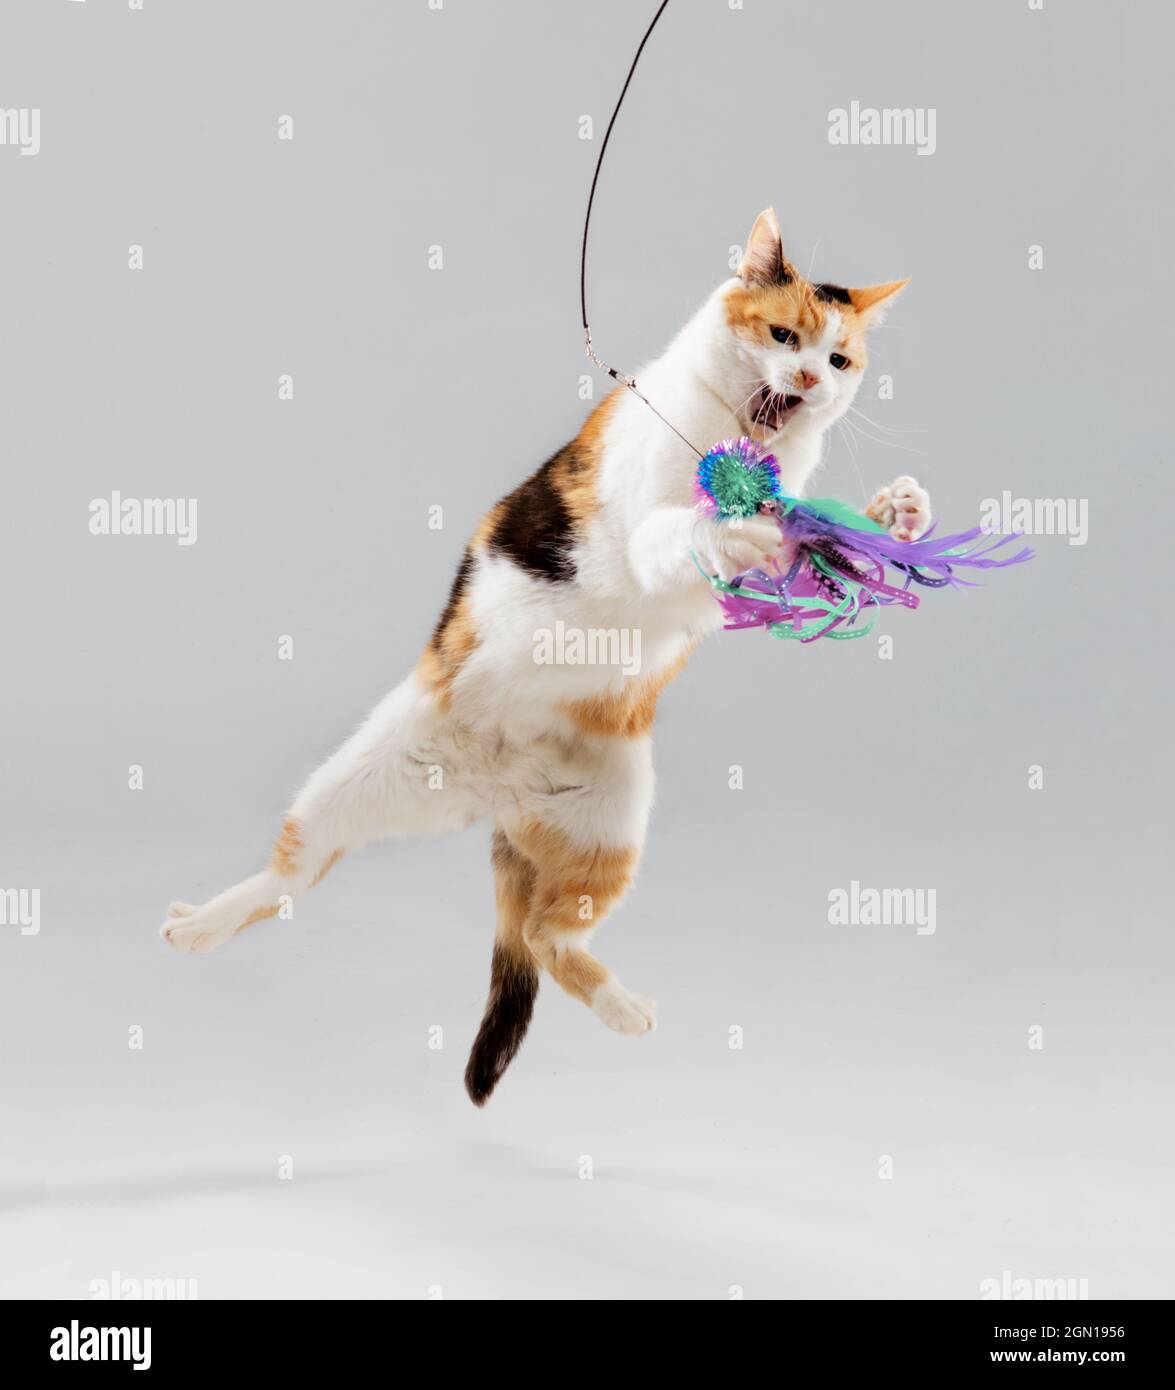 Scatto integrale di un gatto Calico in studio che salta in aria e attacca un giocattolo colorato. Foto Stock